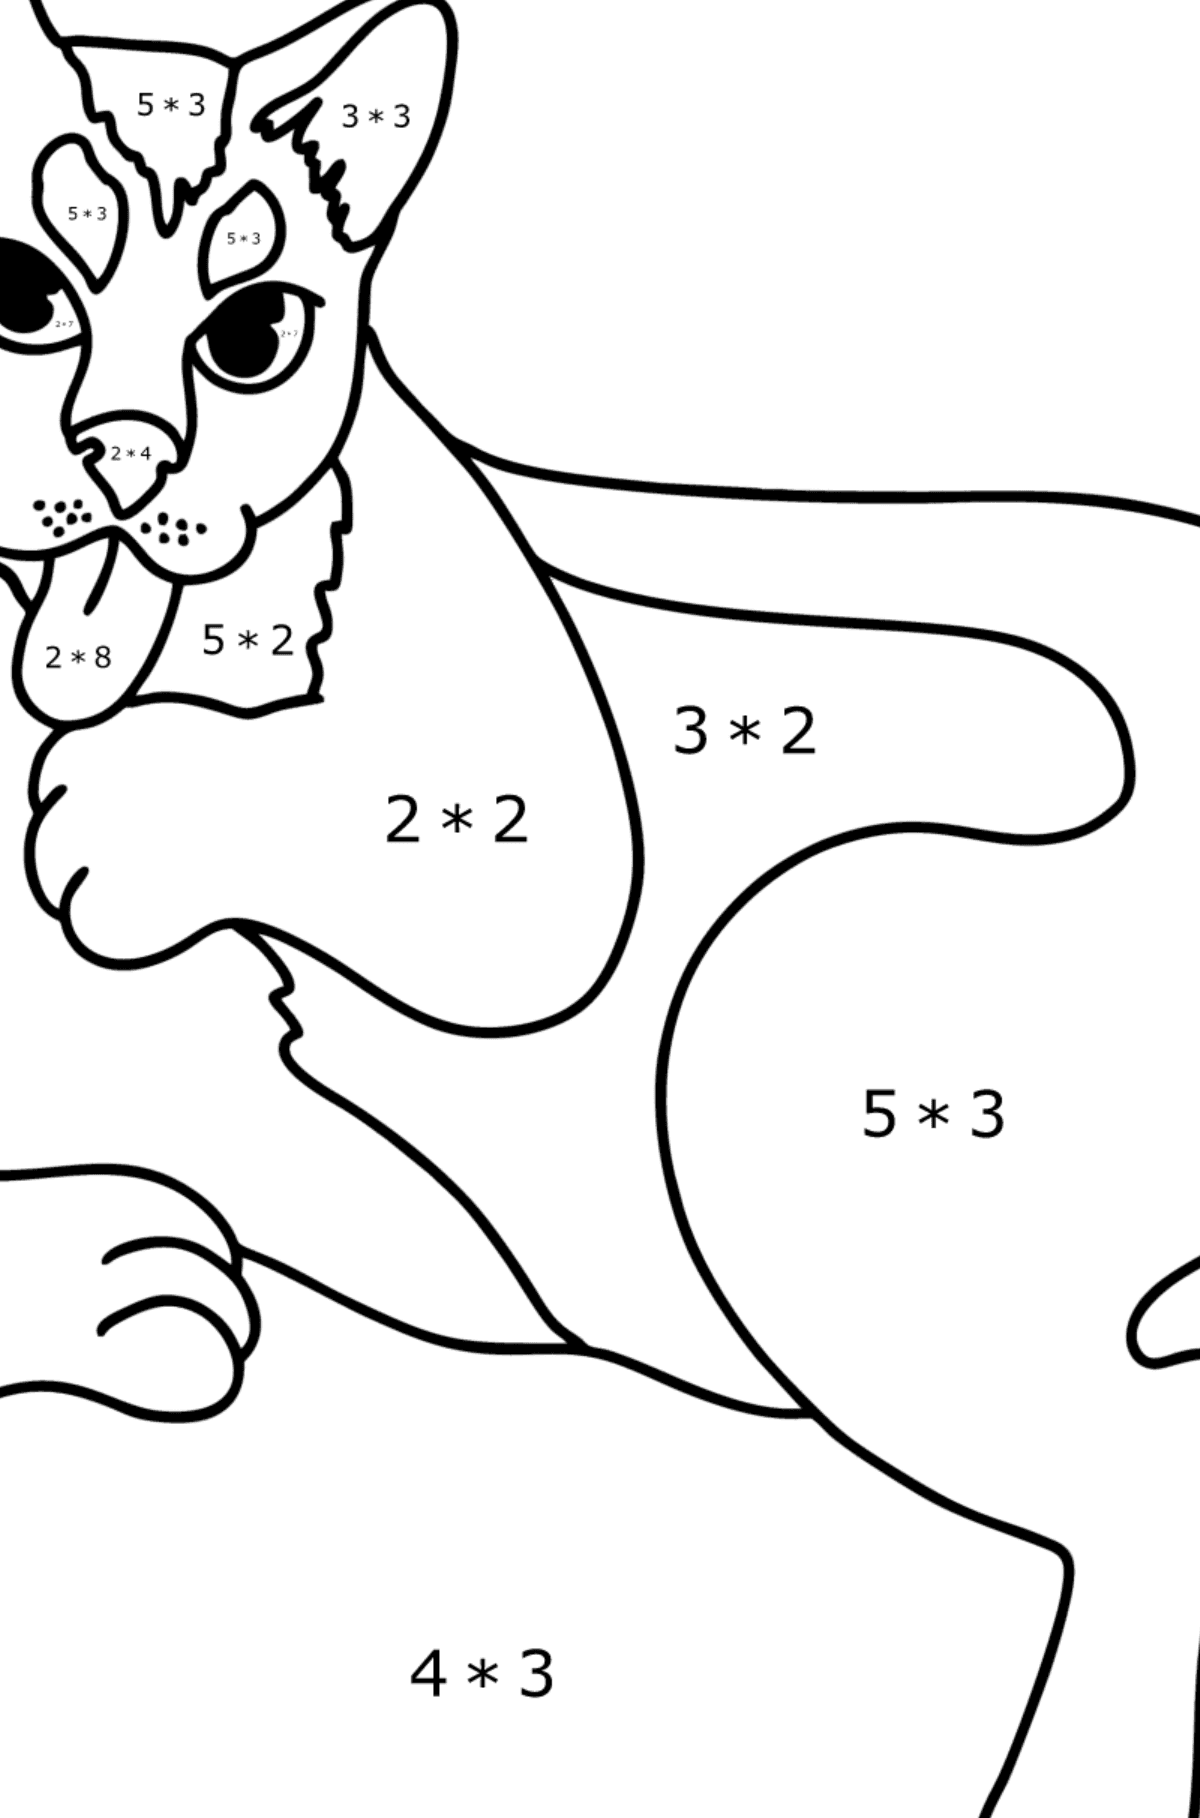 Desenho para colorir do gato preto - Colorindo com Matemática - Multiplicação para Crianças